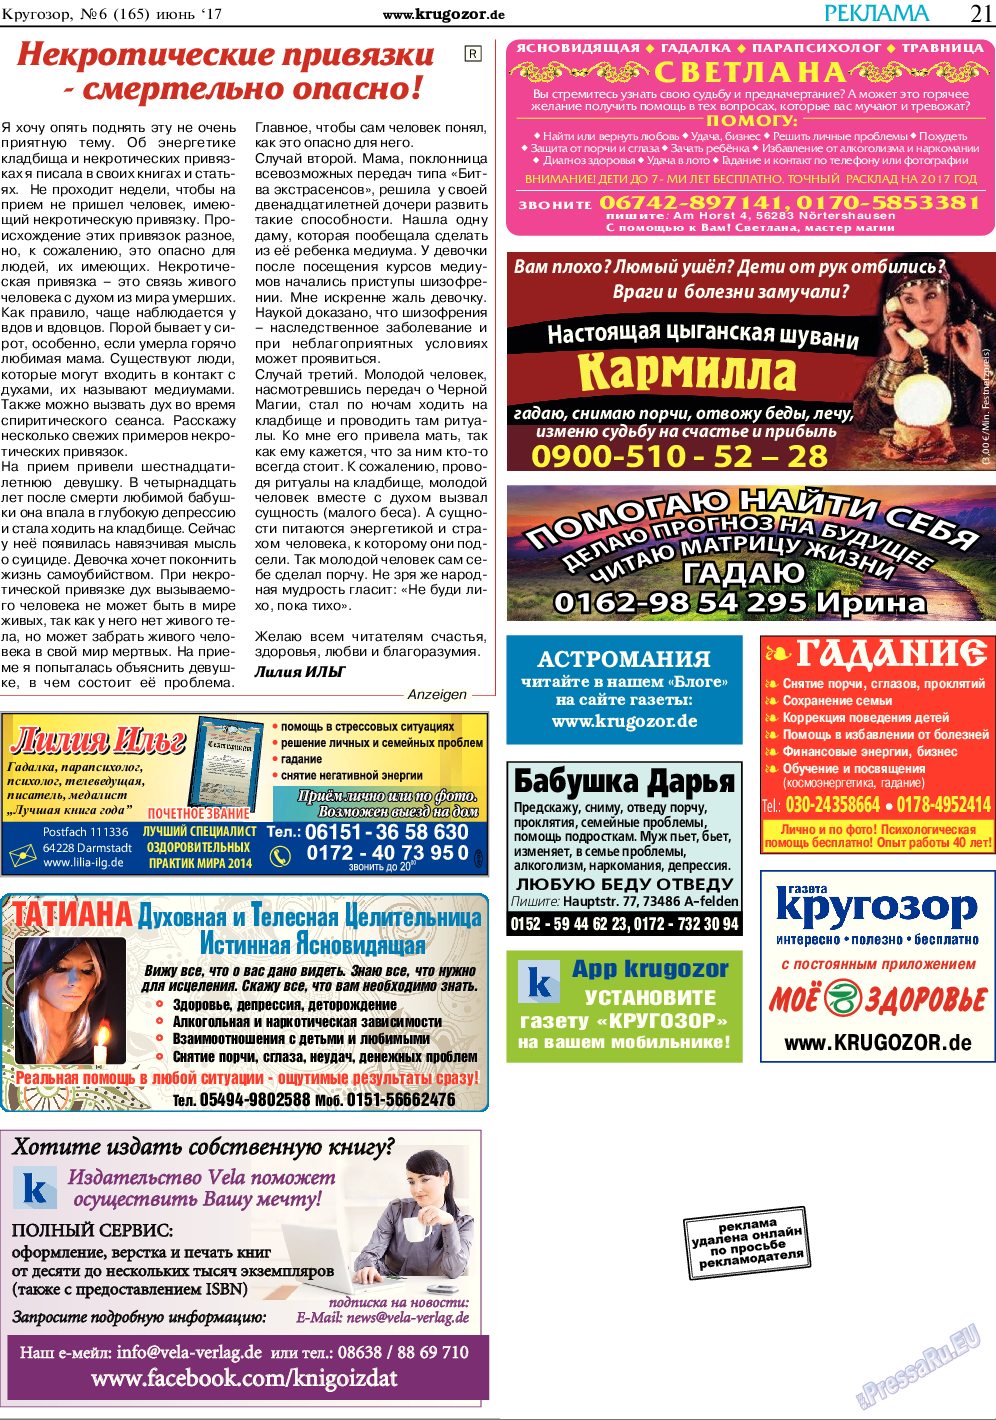 Кругозор, газета. 2017 №6 стр.21